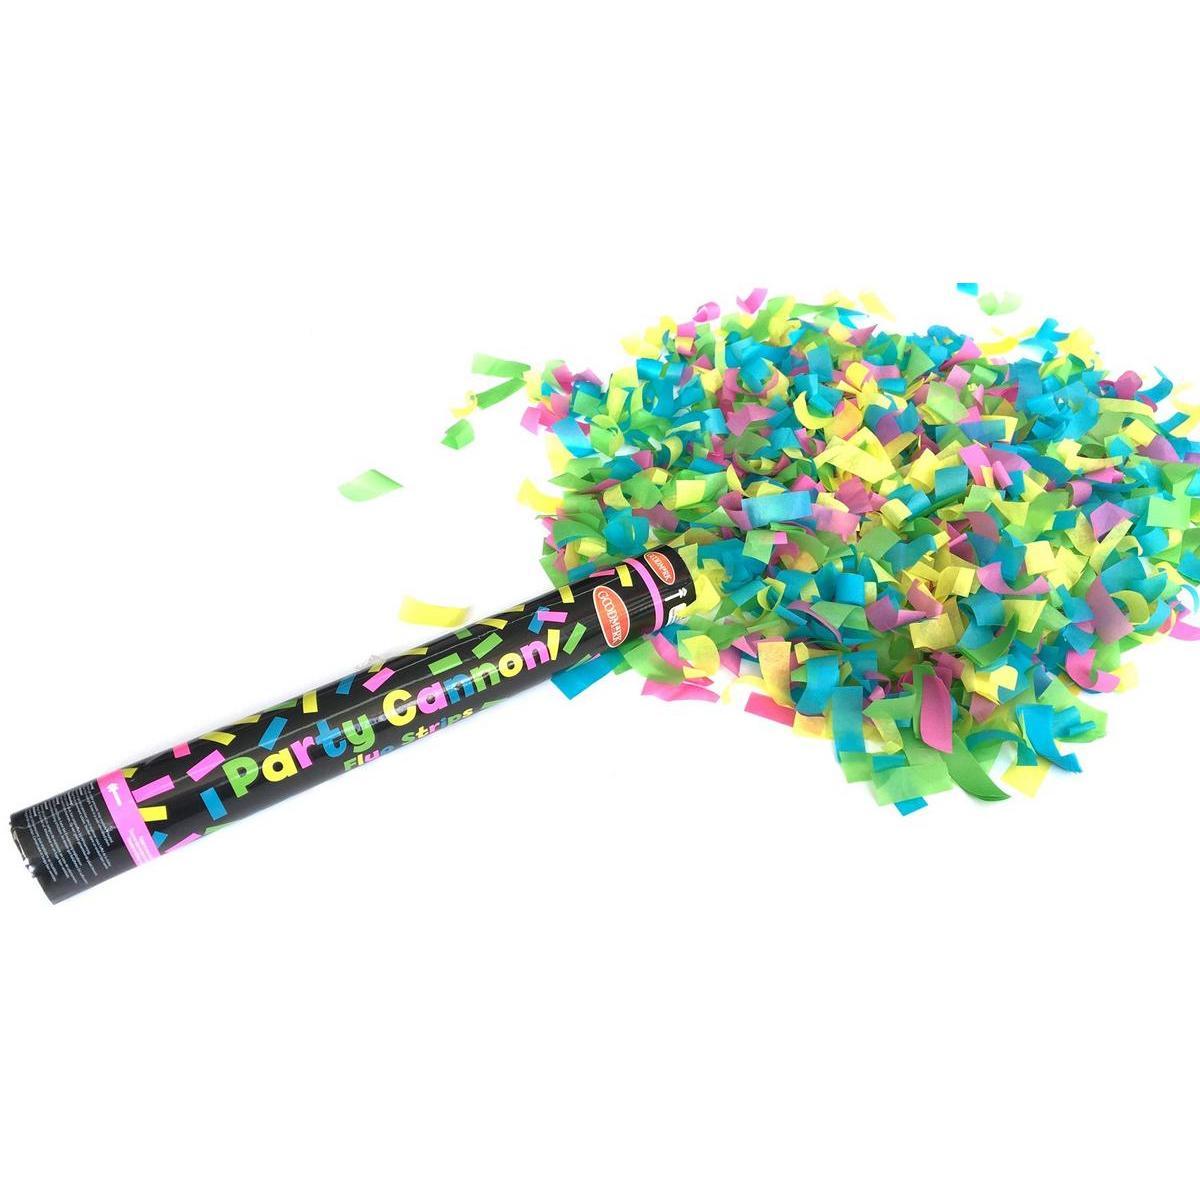 Canon à confettis fluo - Papier - 40 cm - Multicolore